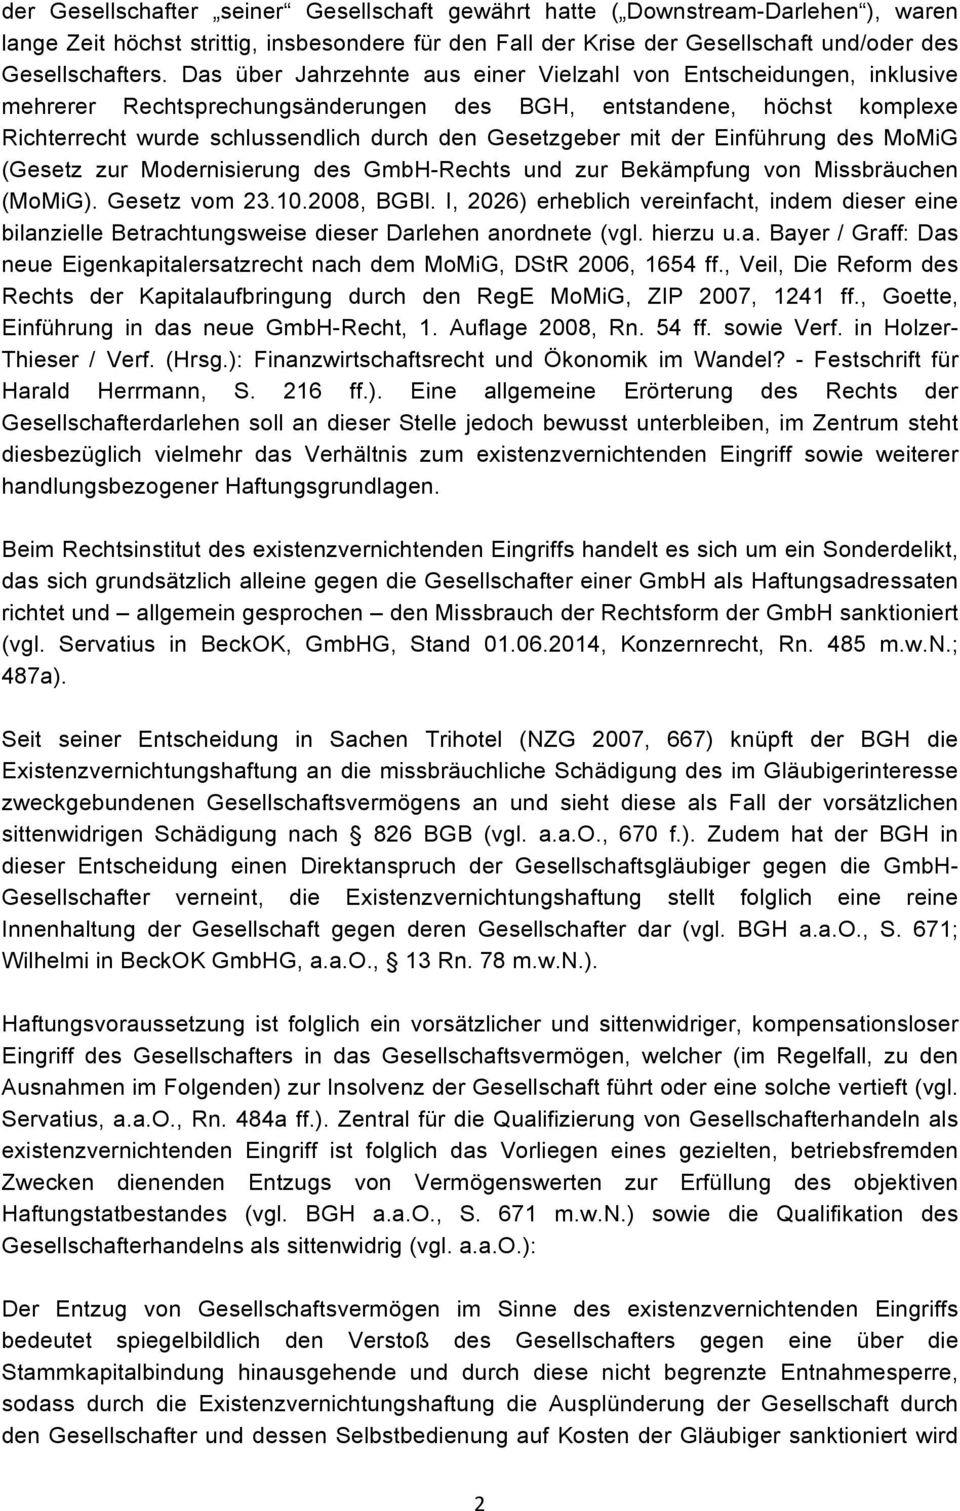 mit der Einführung des MoMiG (Gesetz zur Modernisierung des GmbH-Rechts und zur Bekämpfung von Missbräuchen (MoMiG). Gesetz vom 23.10.2008, BGBl.